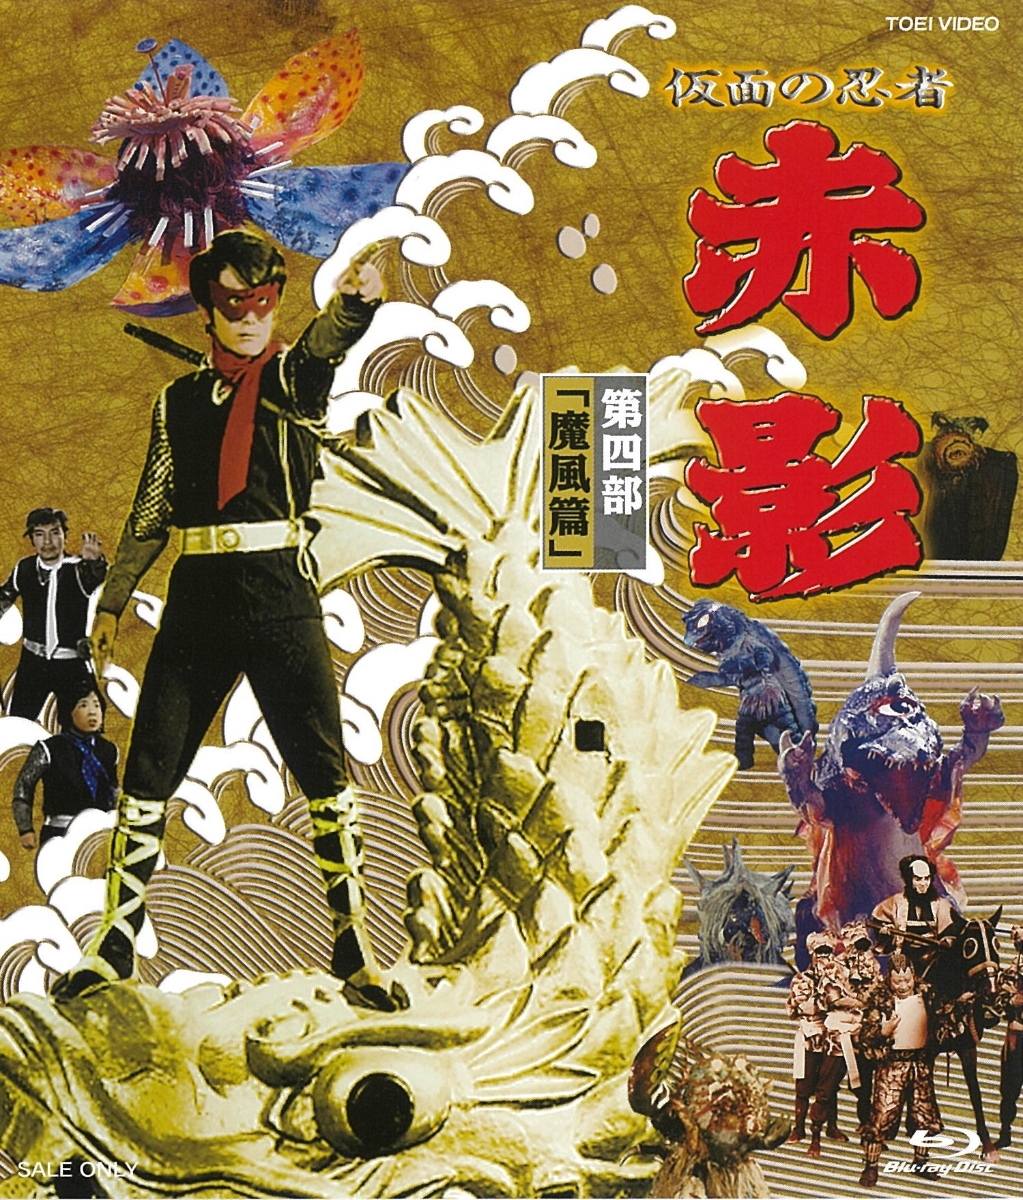 楽天ブックス: 仮面の忍者 赤影 第四部「魔風篇」【Blu-ray】 - 倉田